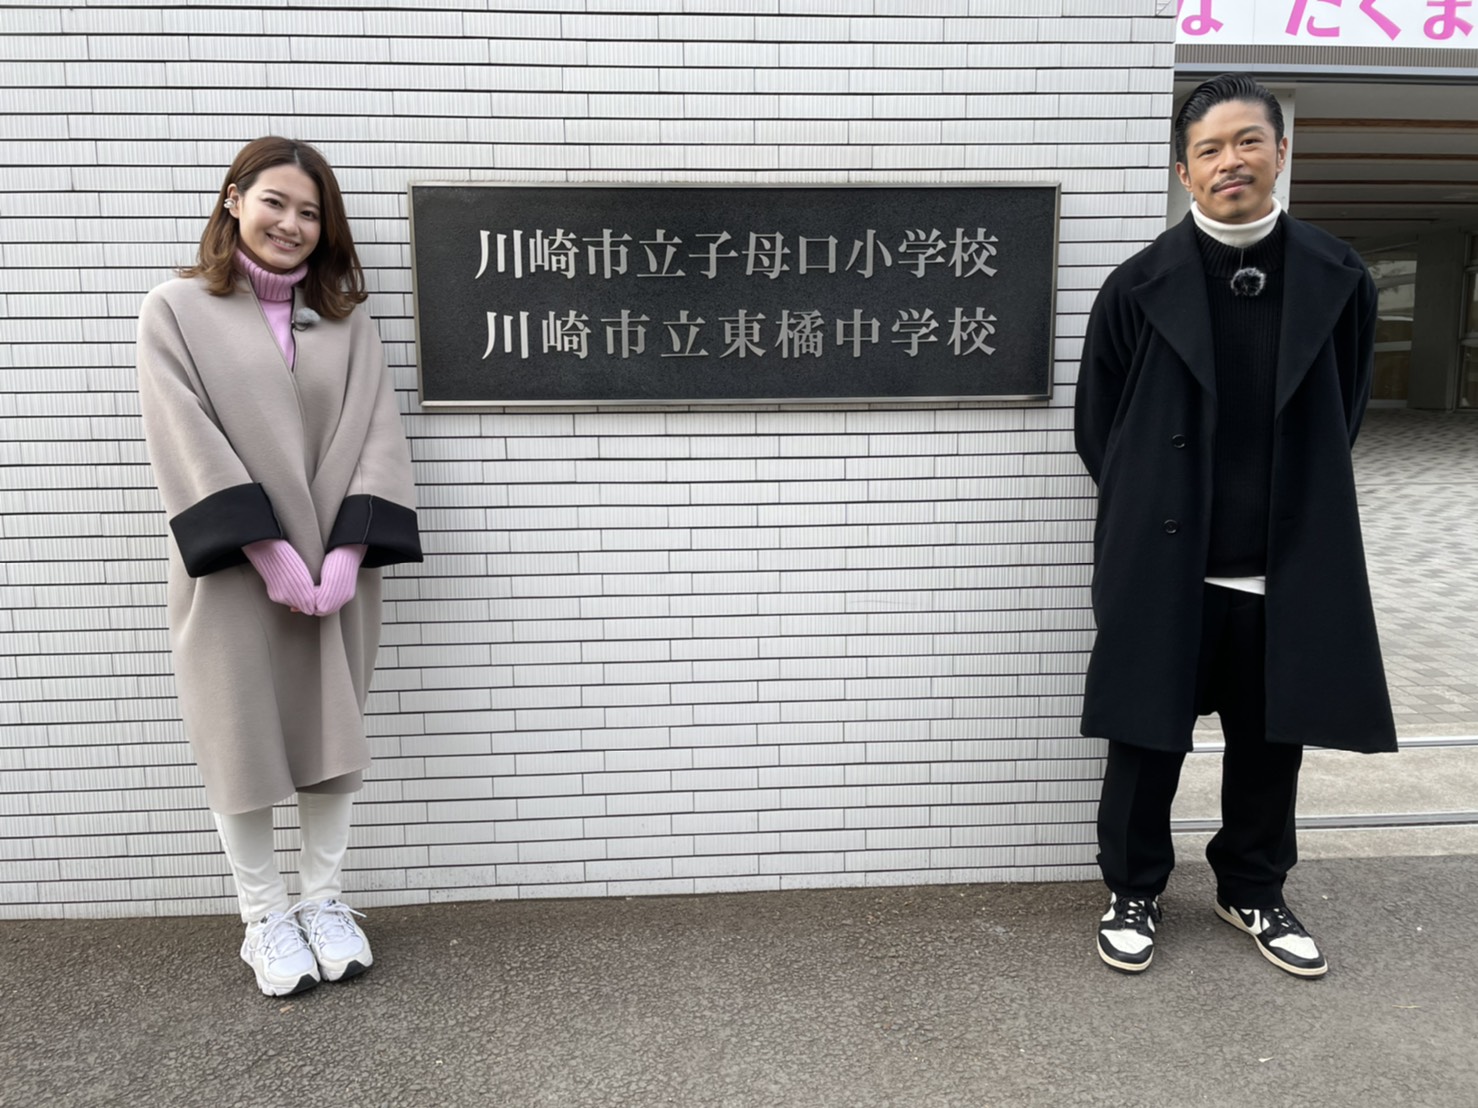 【写真】左プレゼンター、右松本さんが松本さんの母校の前で写っています